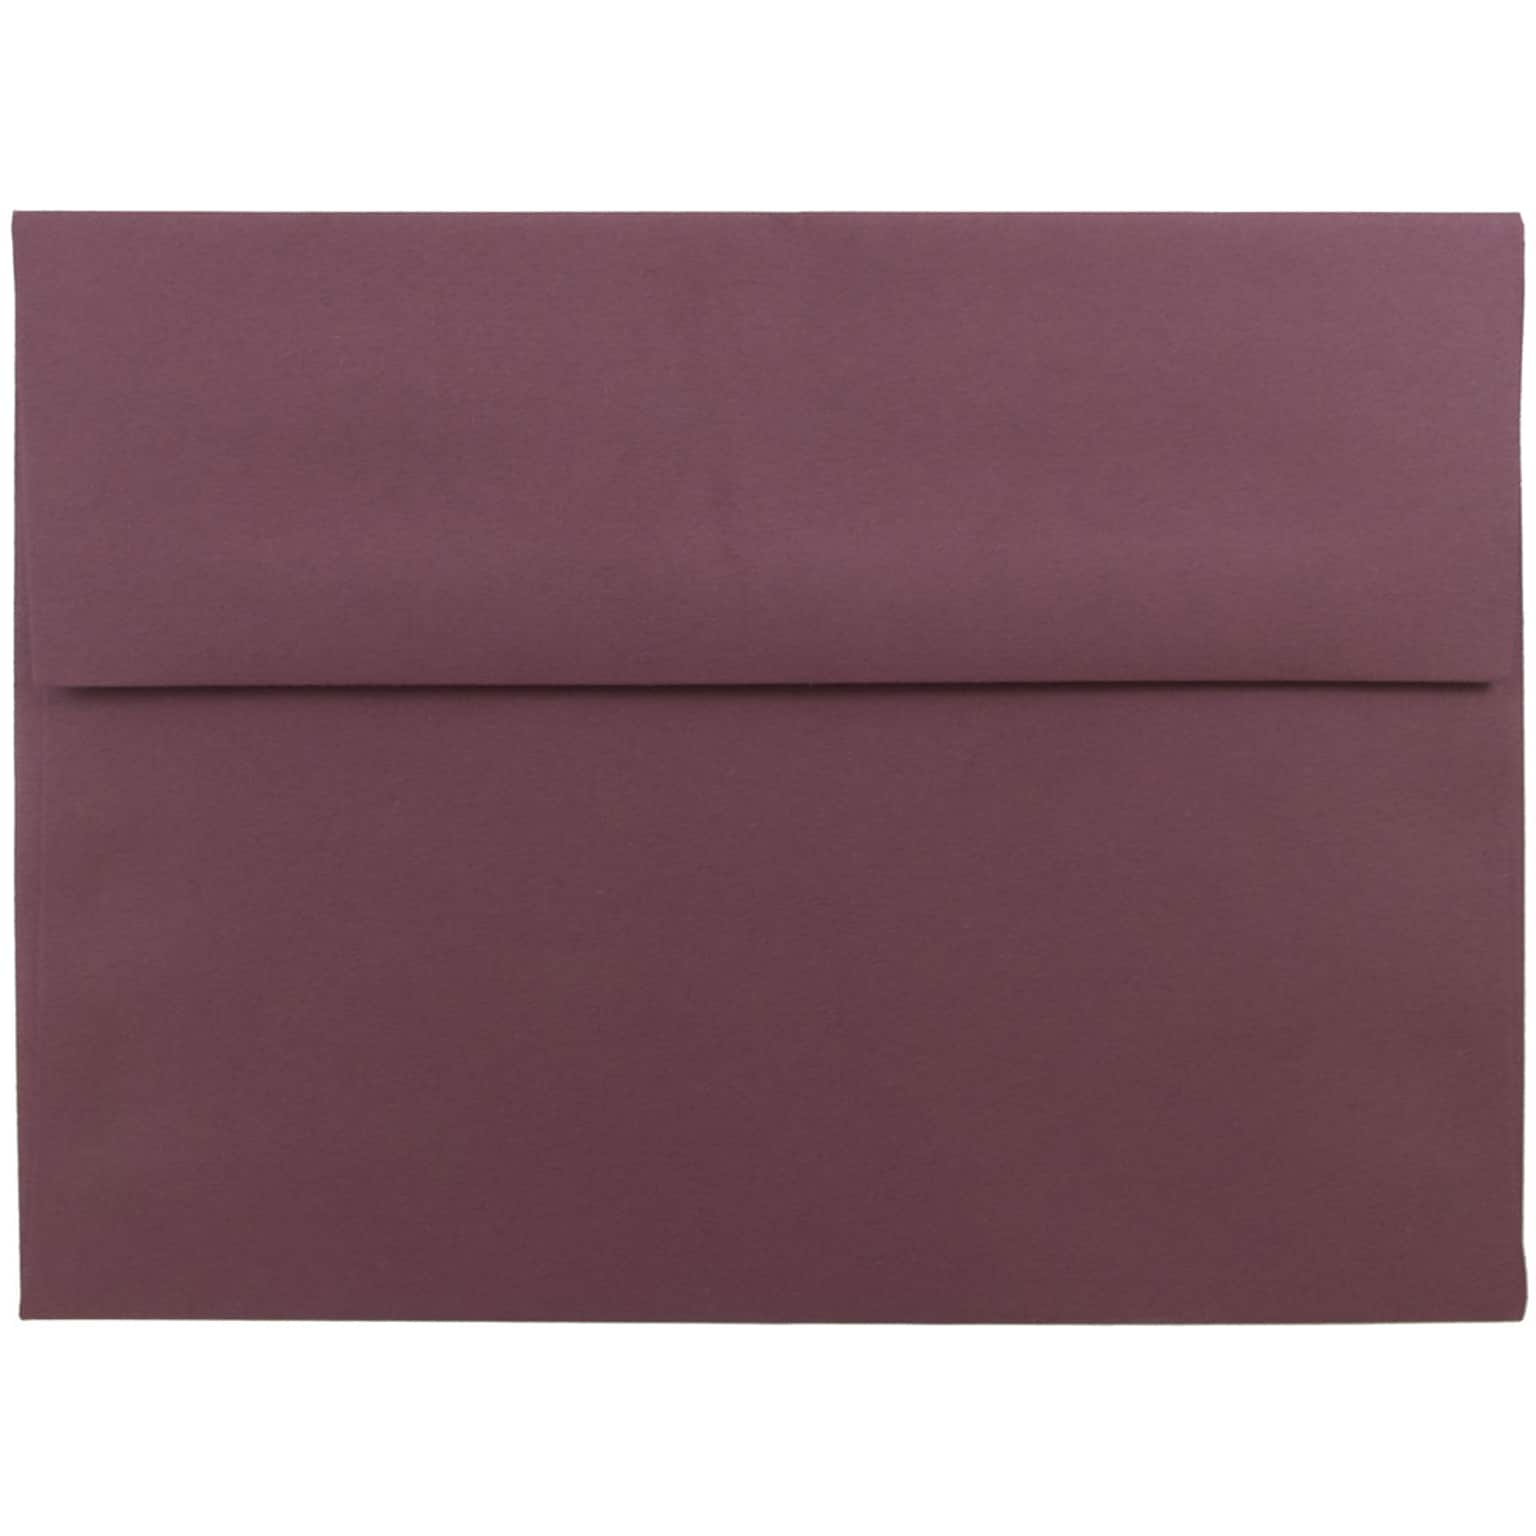 JAM Paper® A7 Invitation Envelopes, 5.25 x 7.25, Burgundy, 50/Pack (36395846I)